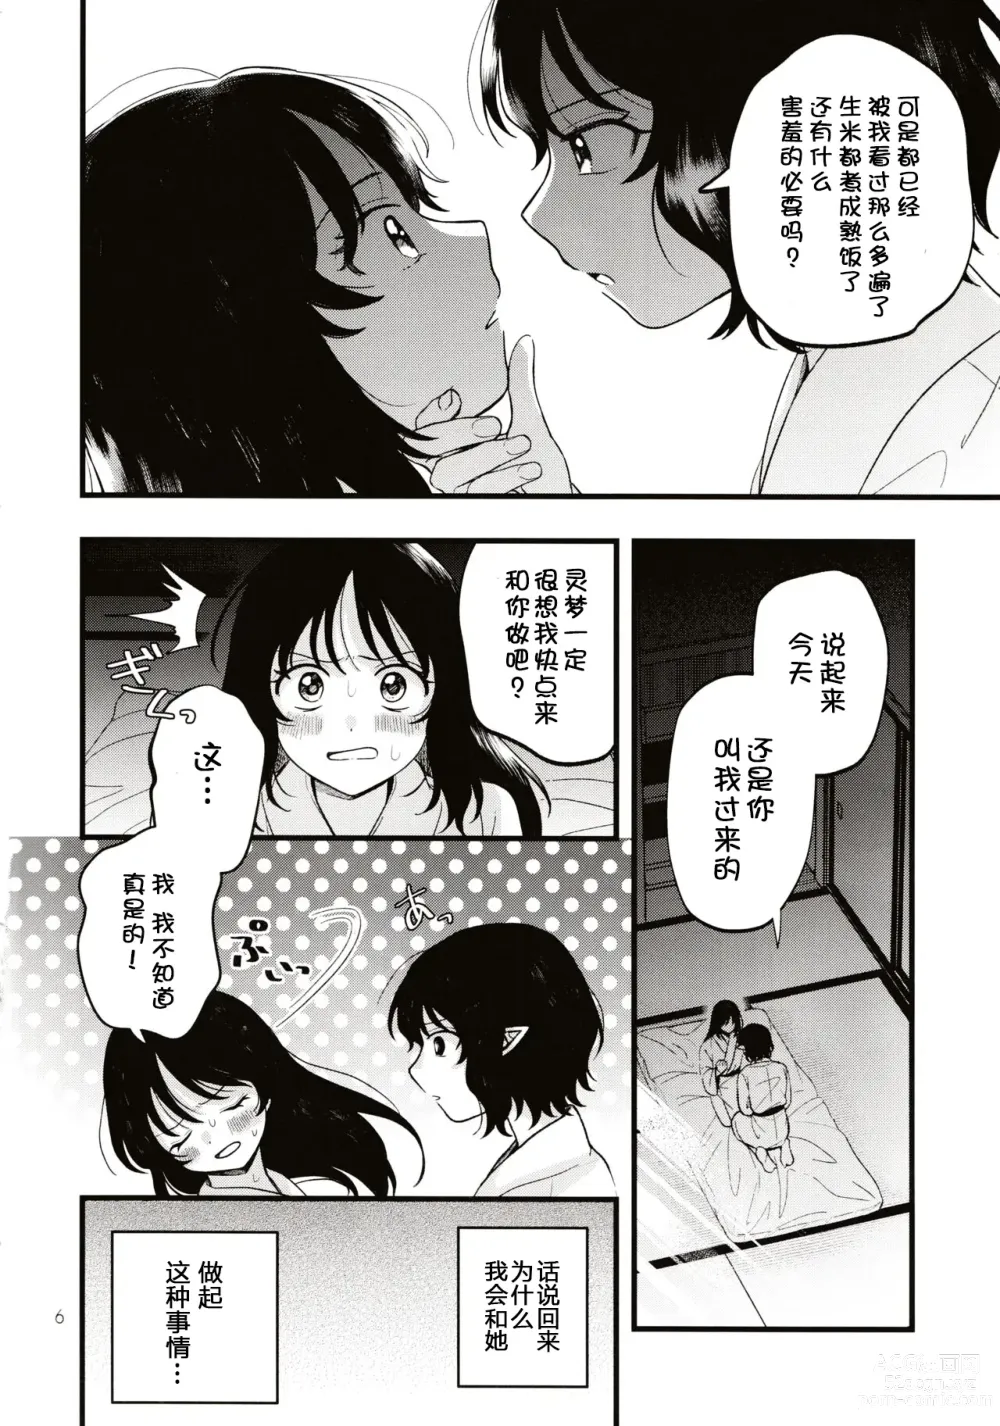 Page 5 of doujinshi Rubeus no Kankai